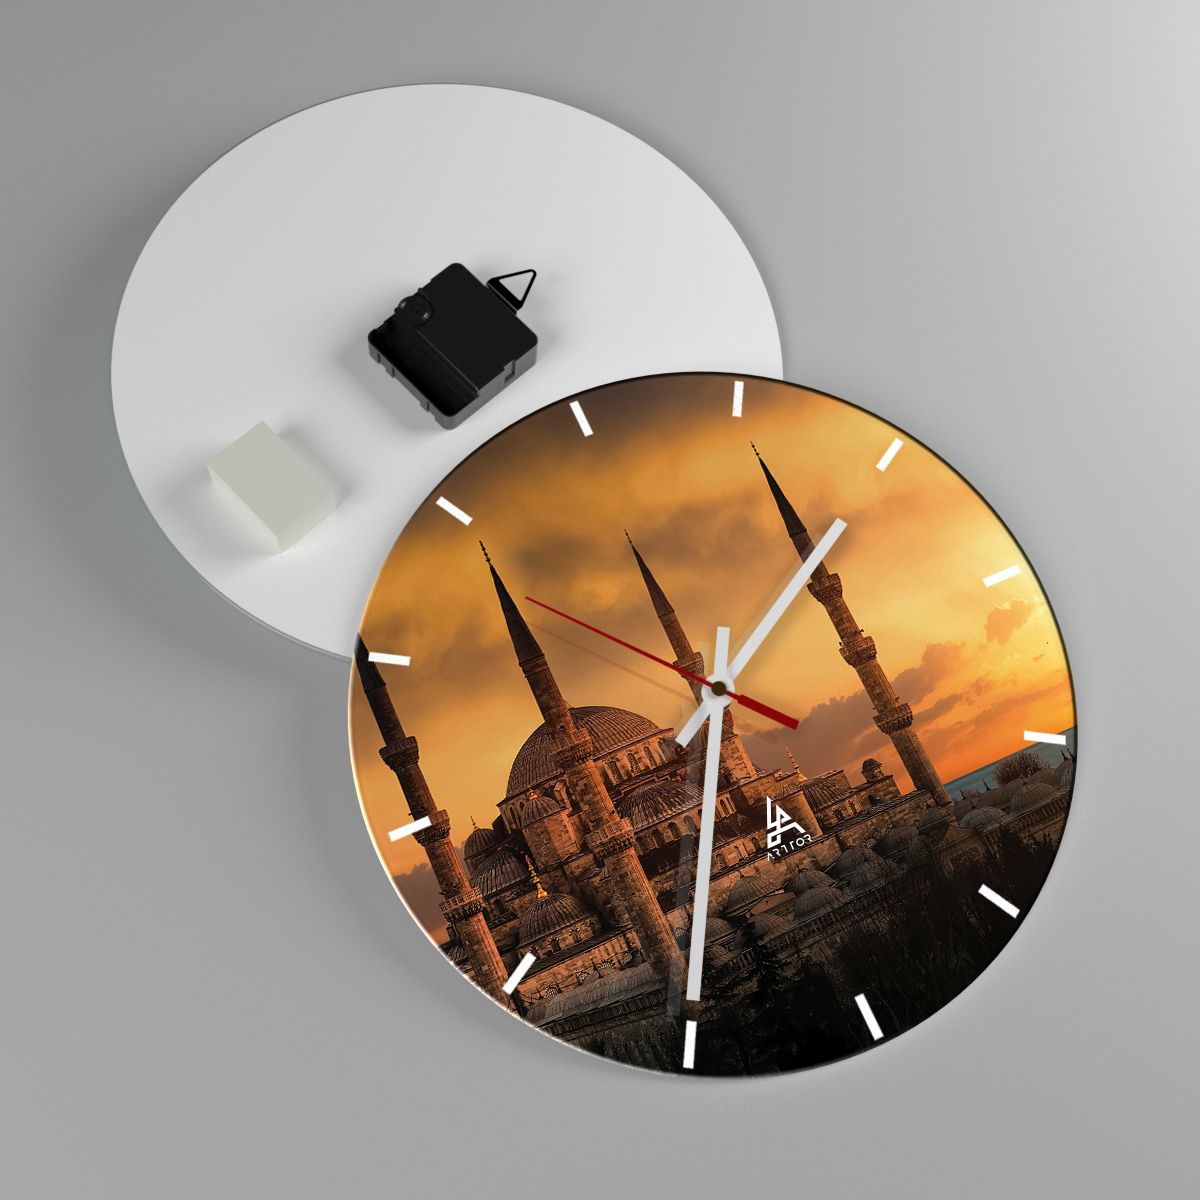 Reloj de pared Arquitectura, Reloj de pared Mezquita, Reloj de pared Estanbul, Reloj de pared Islam, Reloj de pared Pavo